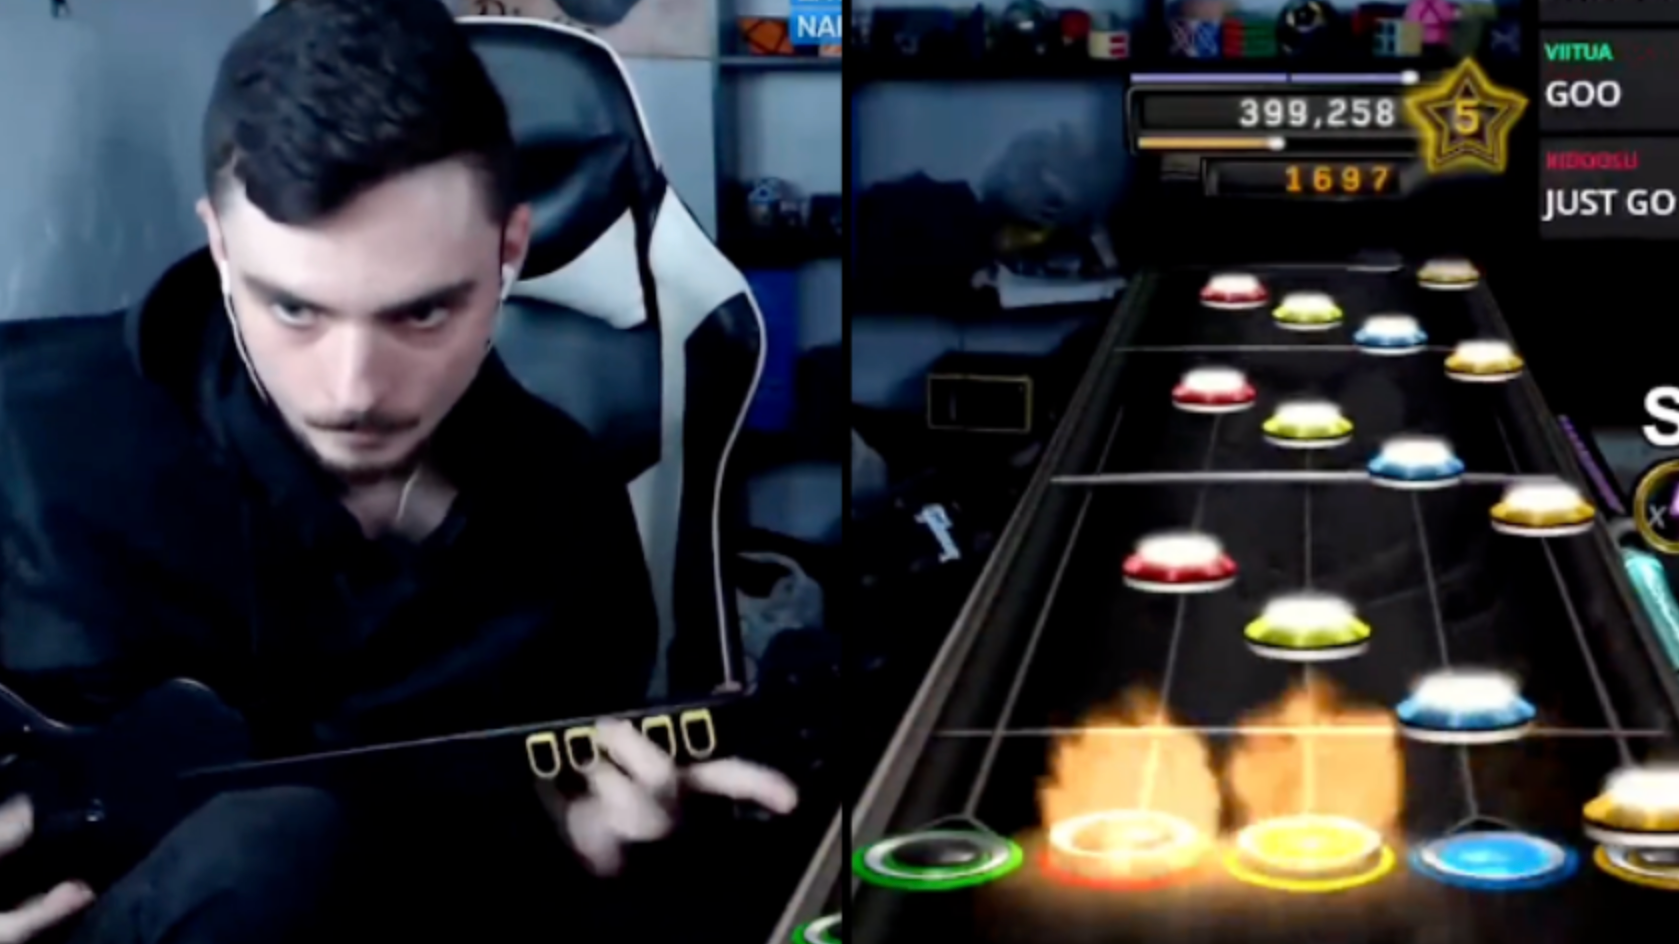 Esse cara gabaritou Through the Fire and Flames do Dragonforce no Guitar  Hero em velocidade 150%